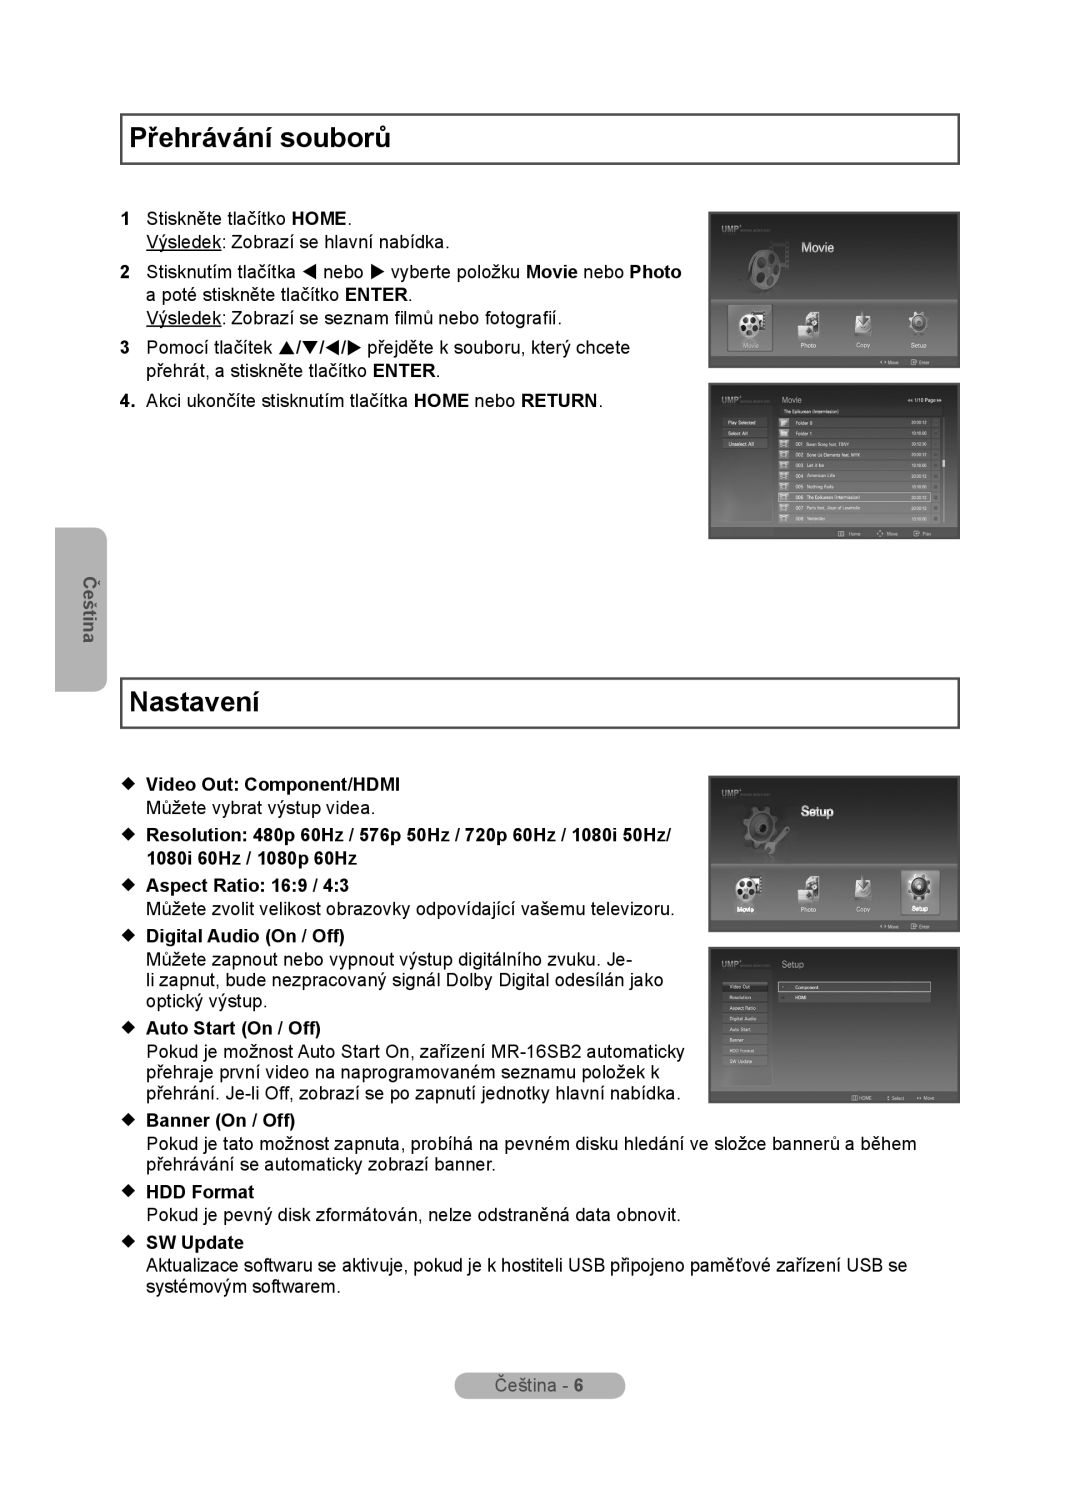 Samsung MR-16SB2 manual Přehrávání souborů, Nastavení,  Digital Audio On / Off,  Auto Start On / Off,  Banner On / Off 